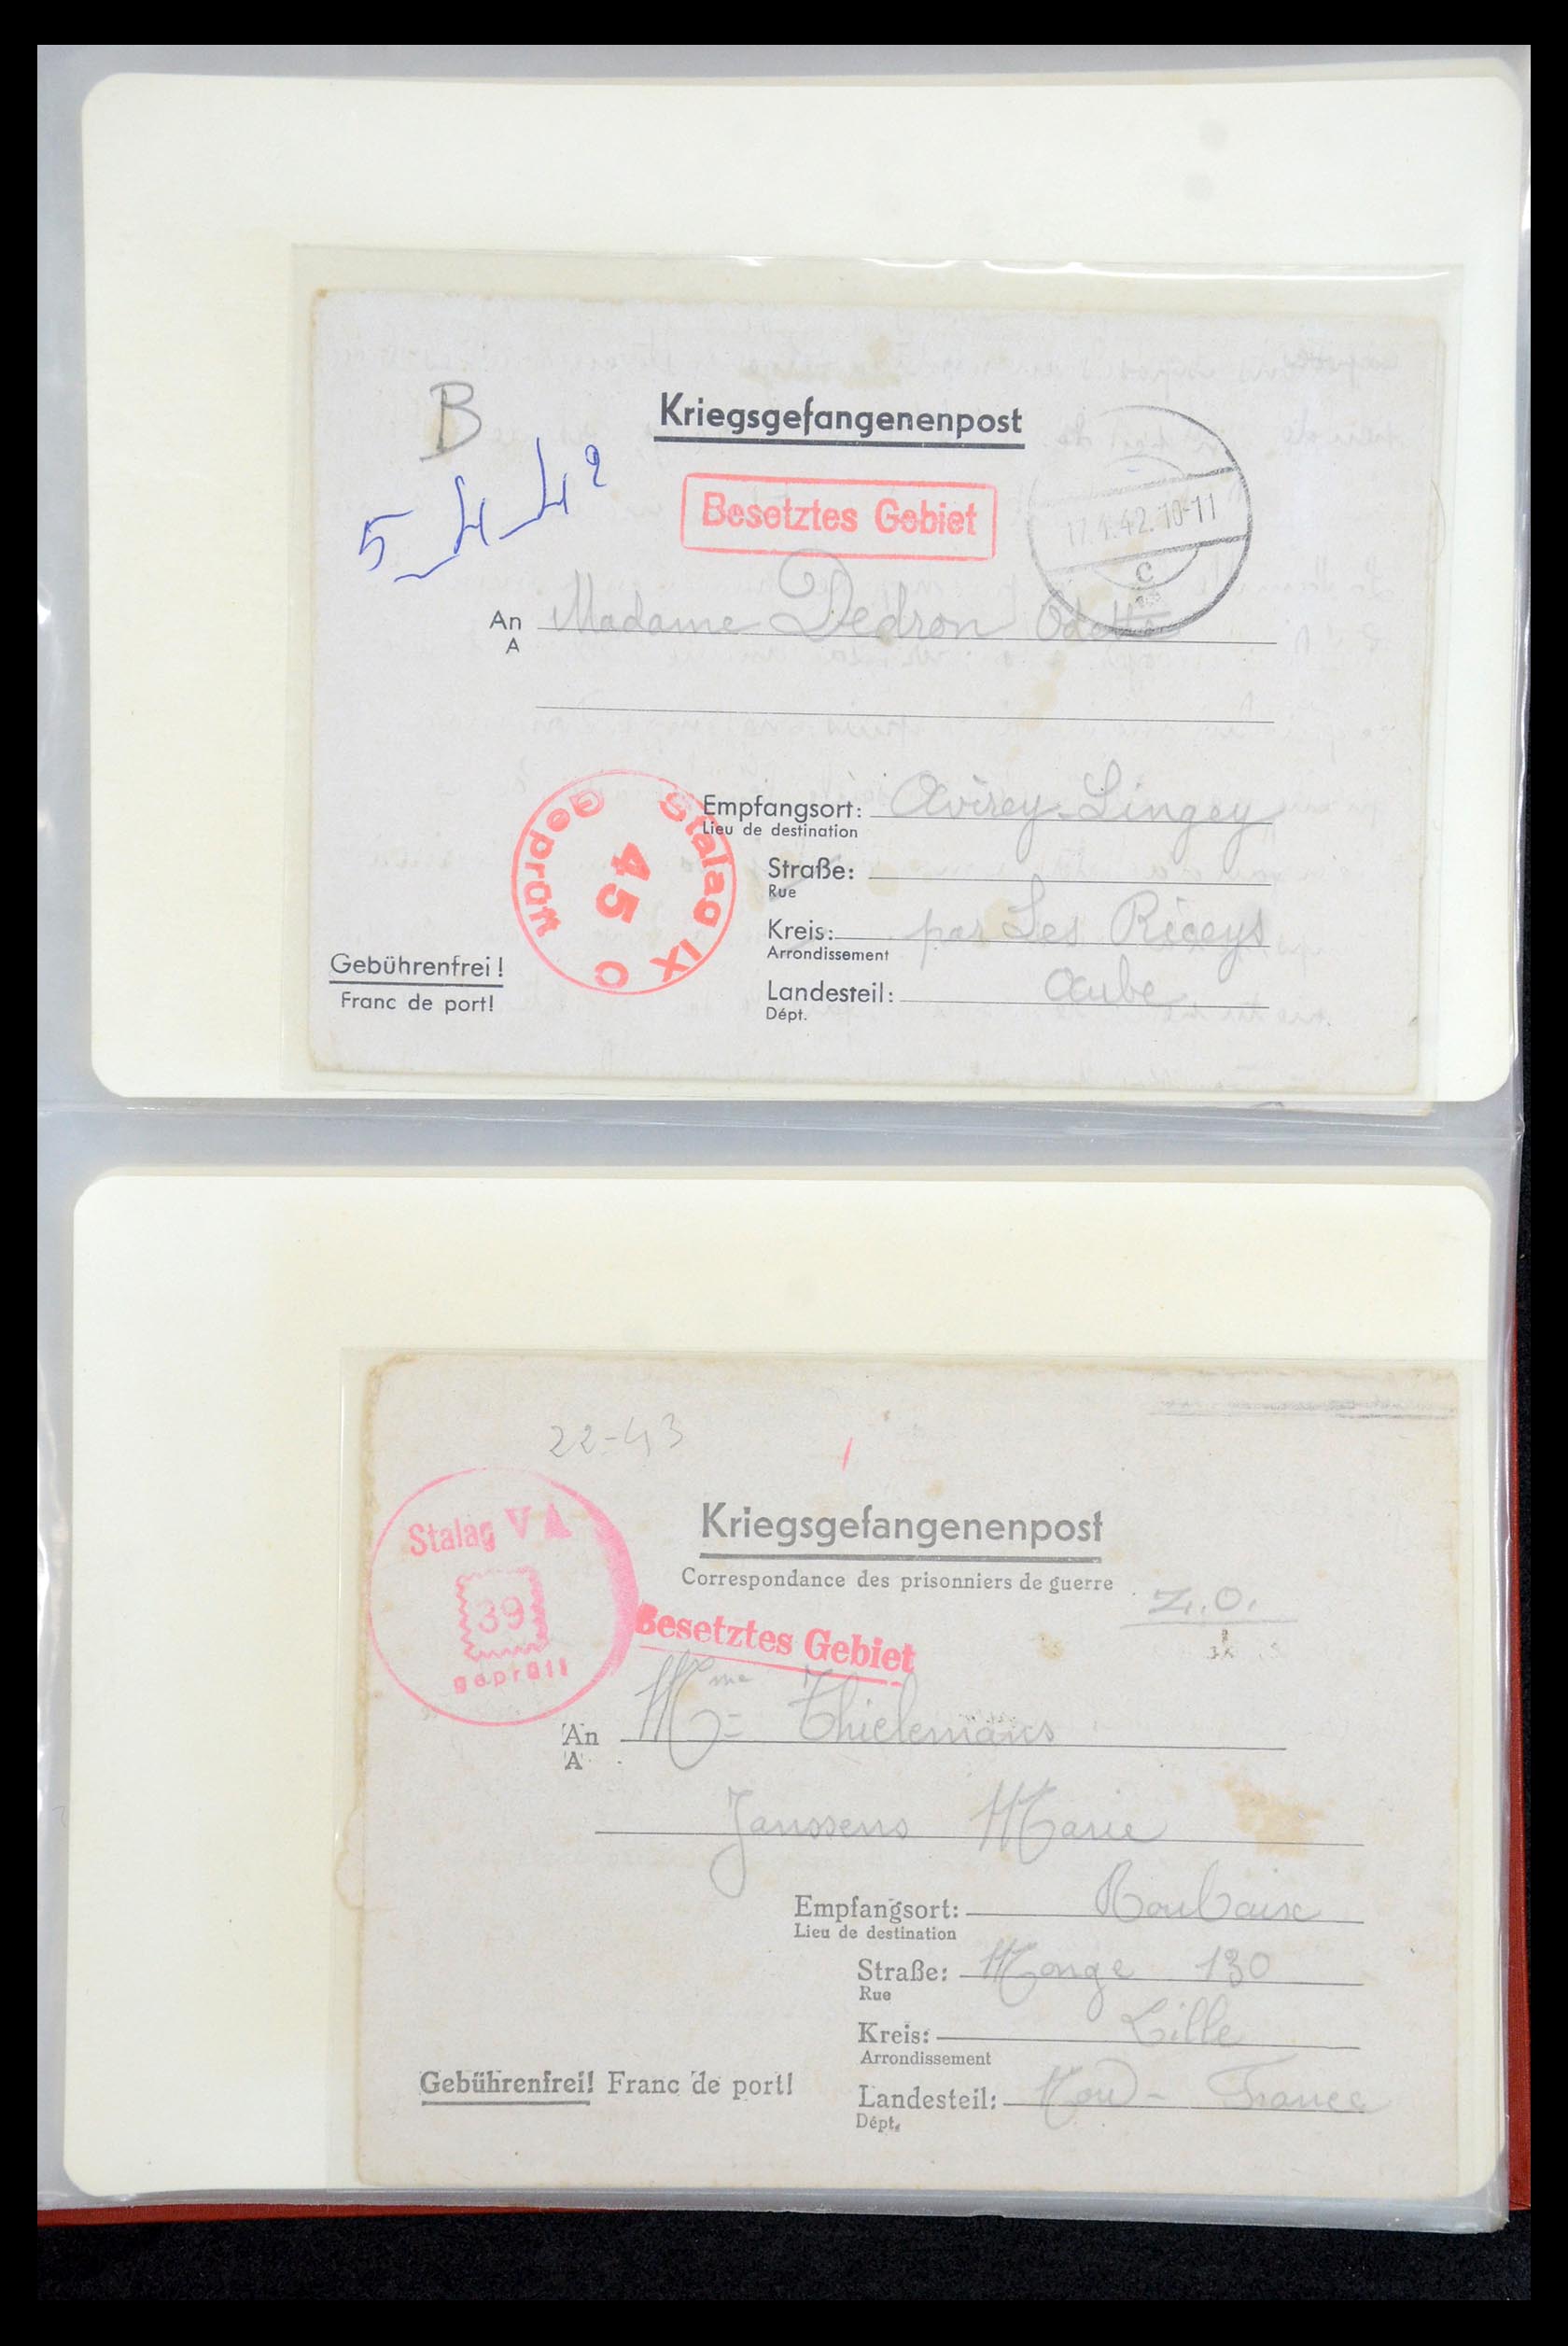 35599 019 - Stamp Collection 35599 Germany prisoner of war cards 1940-1944.